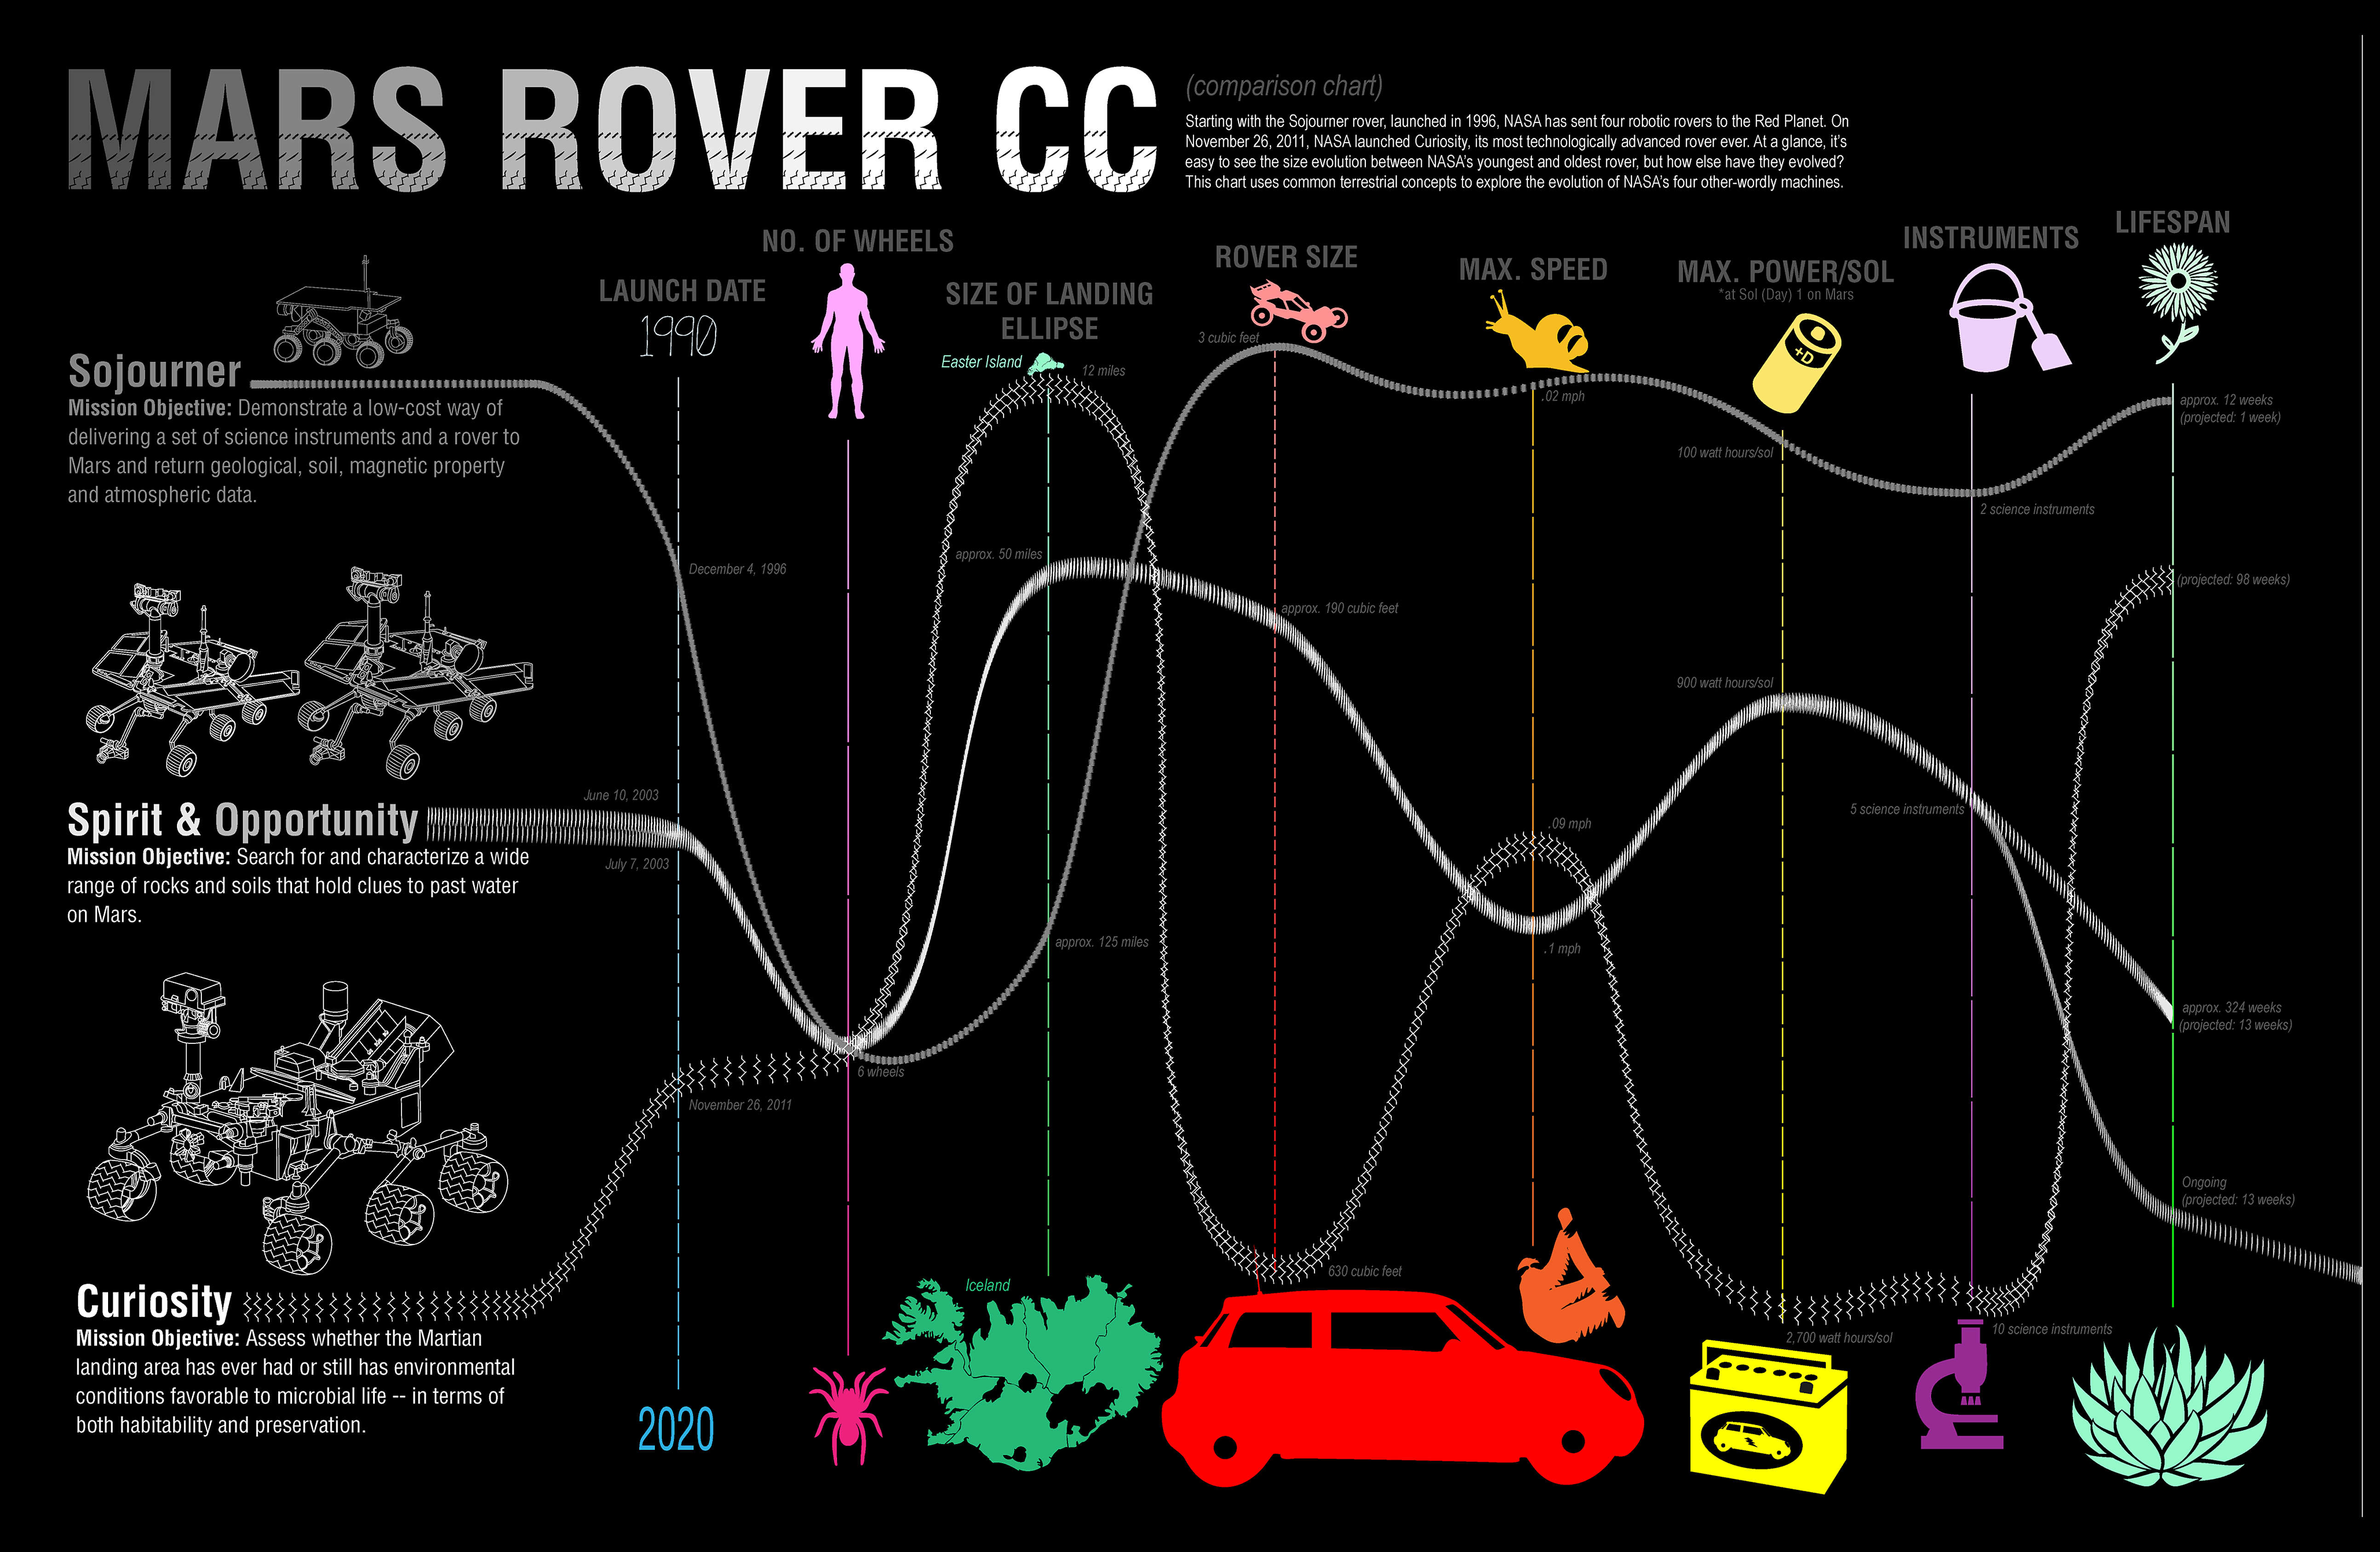 rover_cc